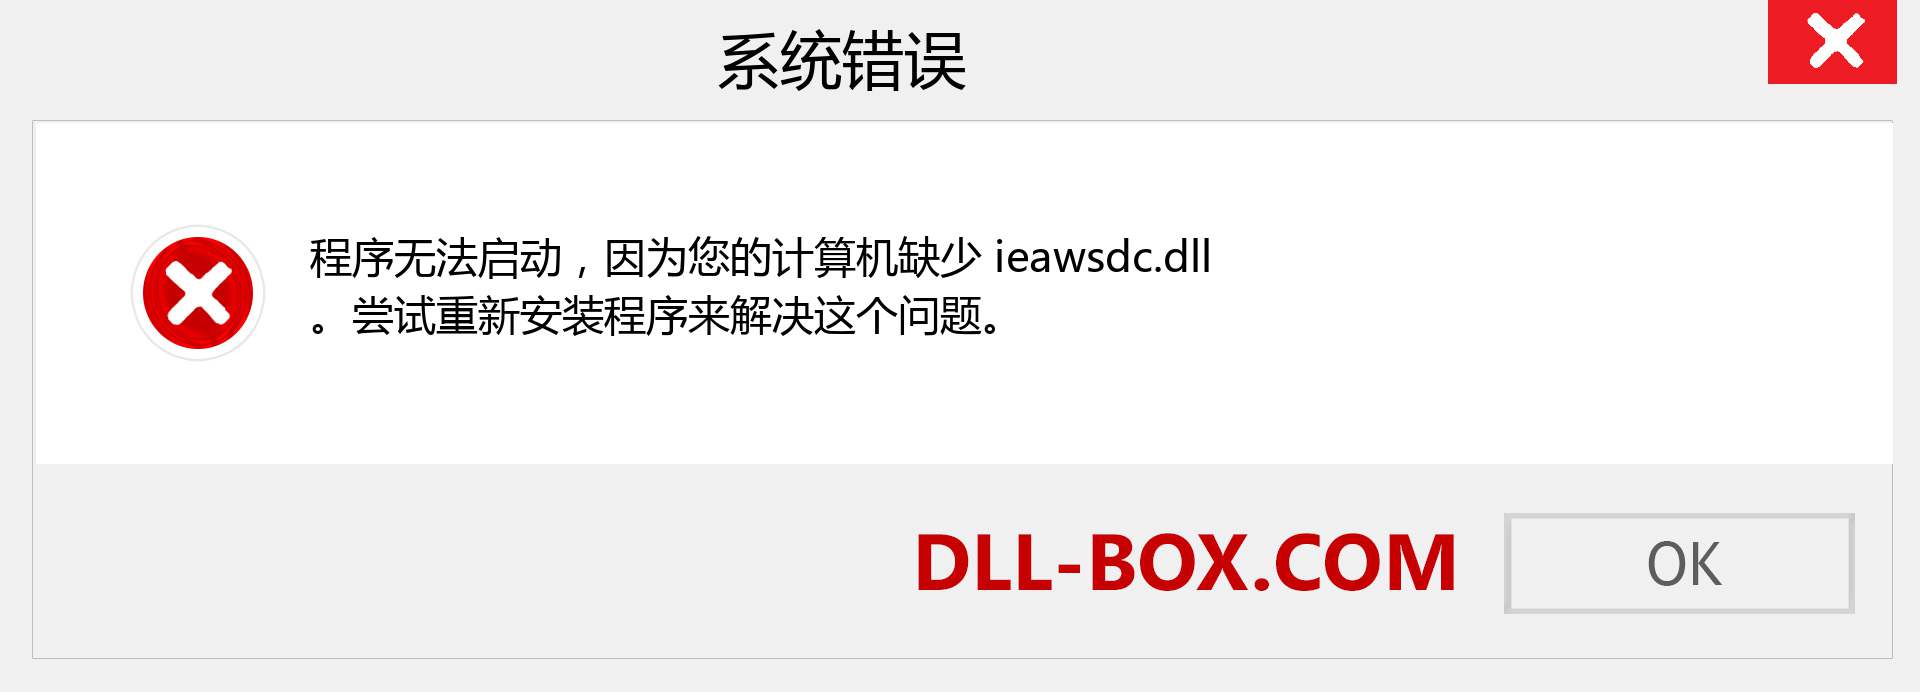 ieawsdc.dll 文件丢失？。 适用于 Windows 7、8、10 的下载 - 修复 Windows、照片、图像上的 ieawsdc dll 丢失错误